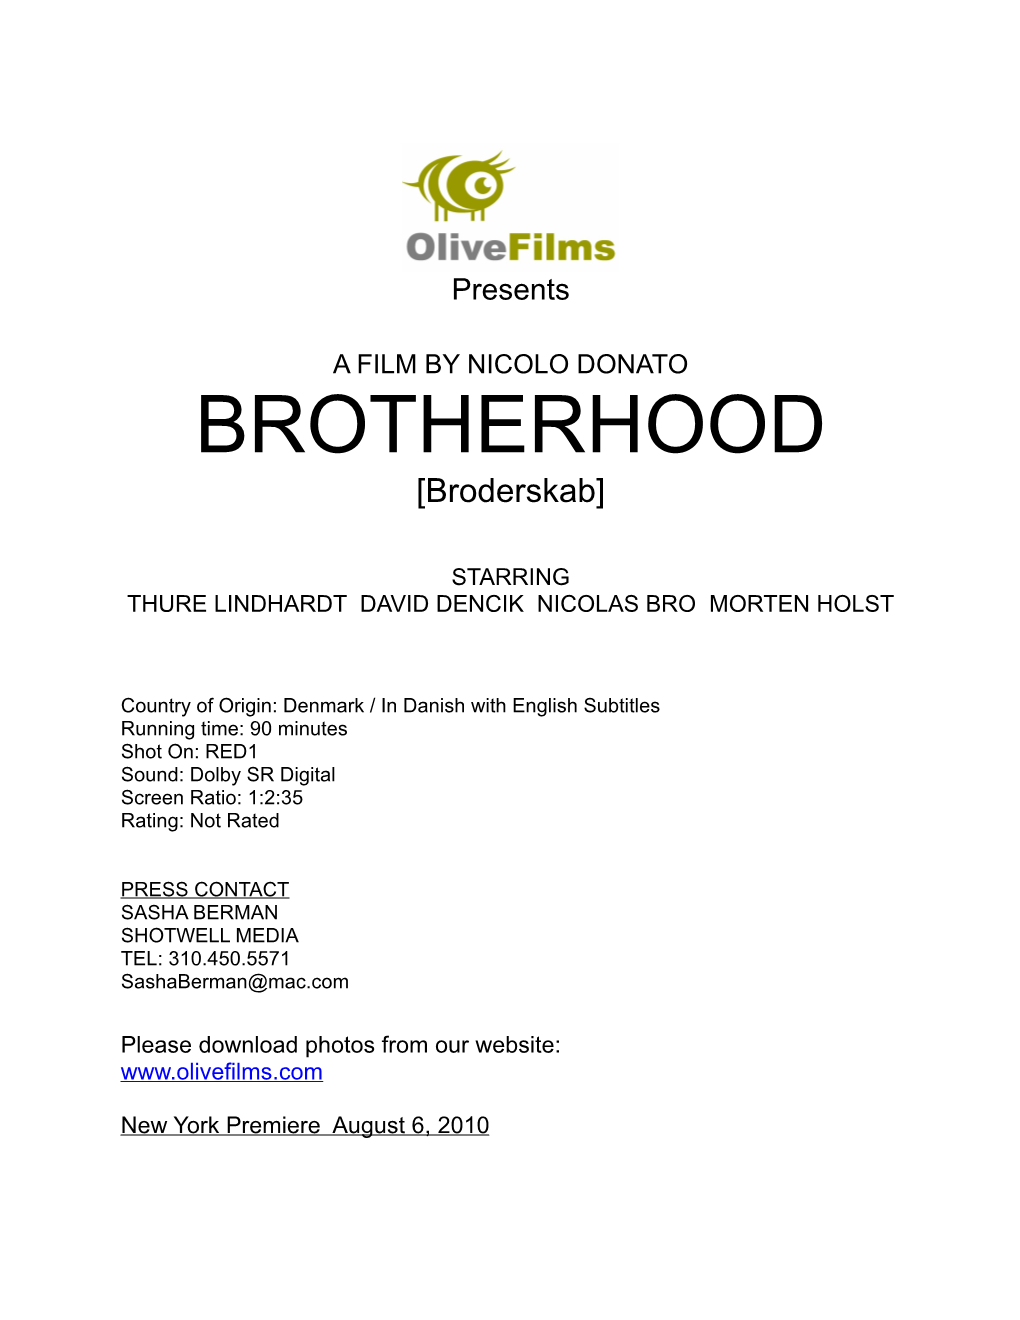 BROTHERHOOD [Broderskab]